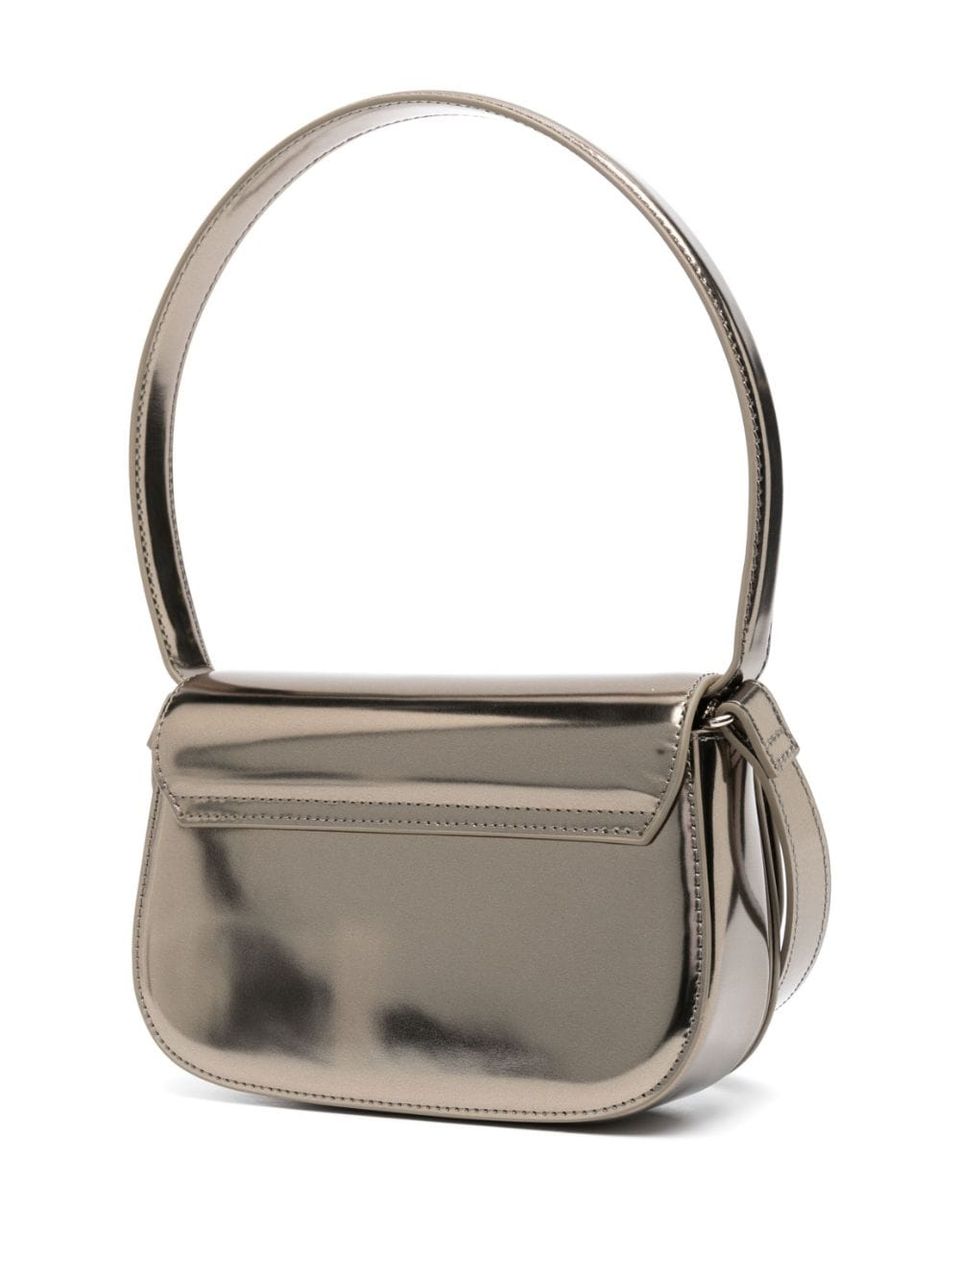 Diesel 1DR Metallic Shoulder Bag - Silver for Women